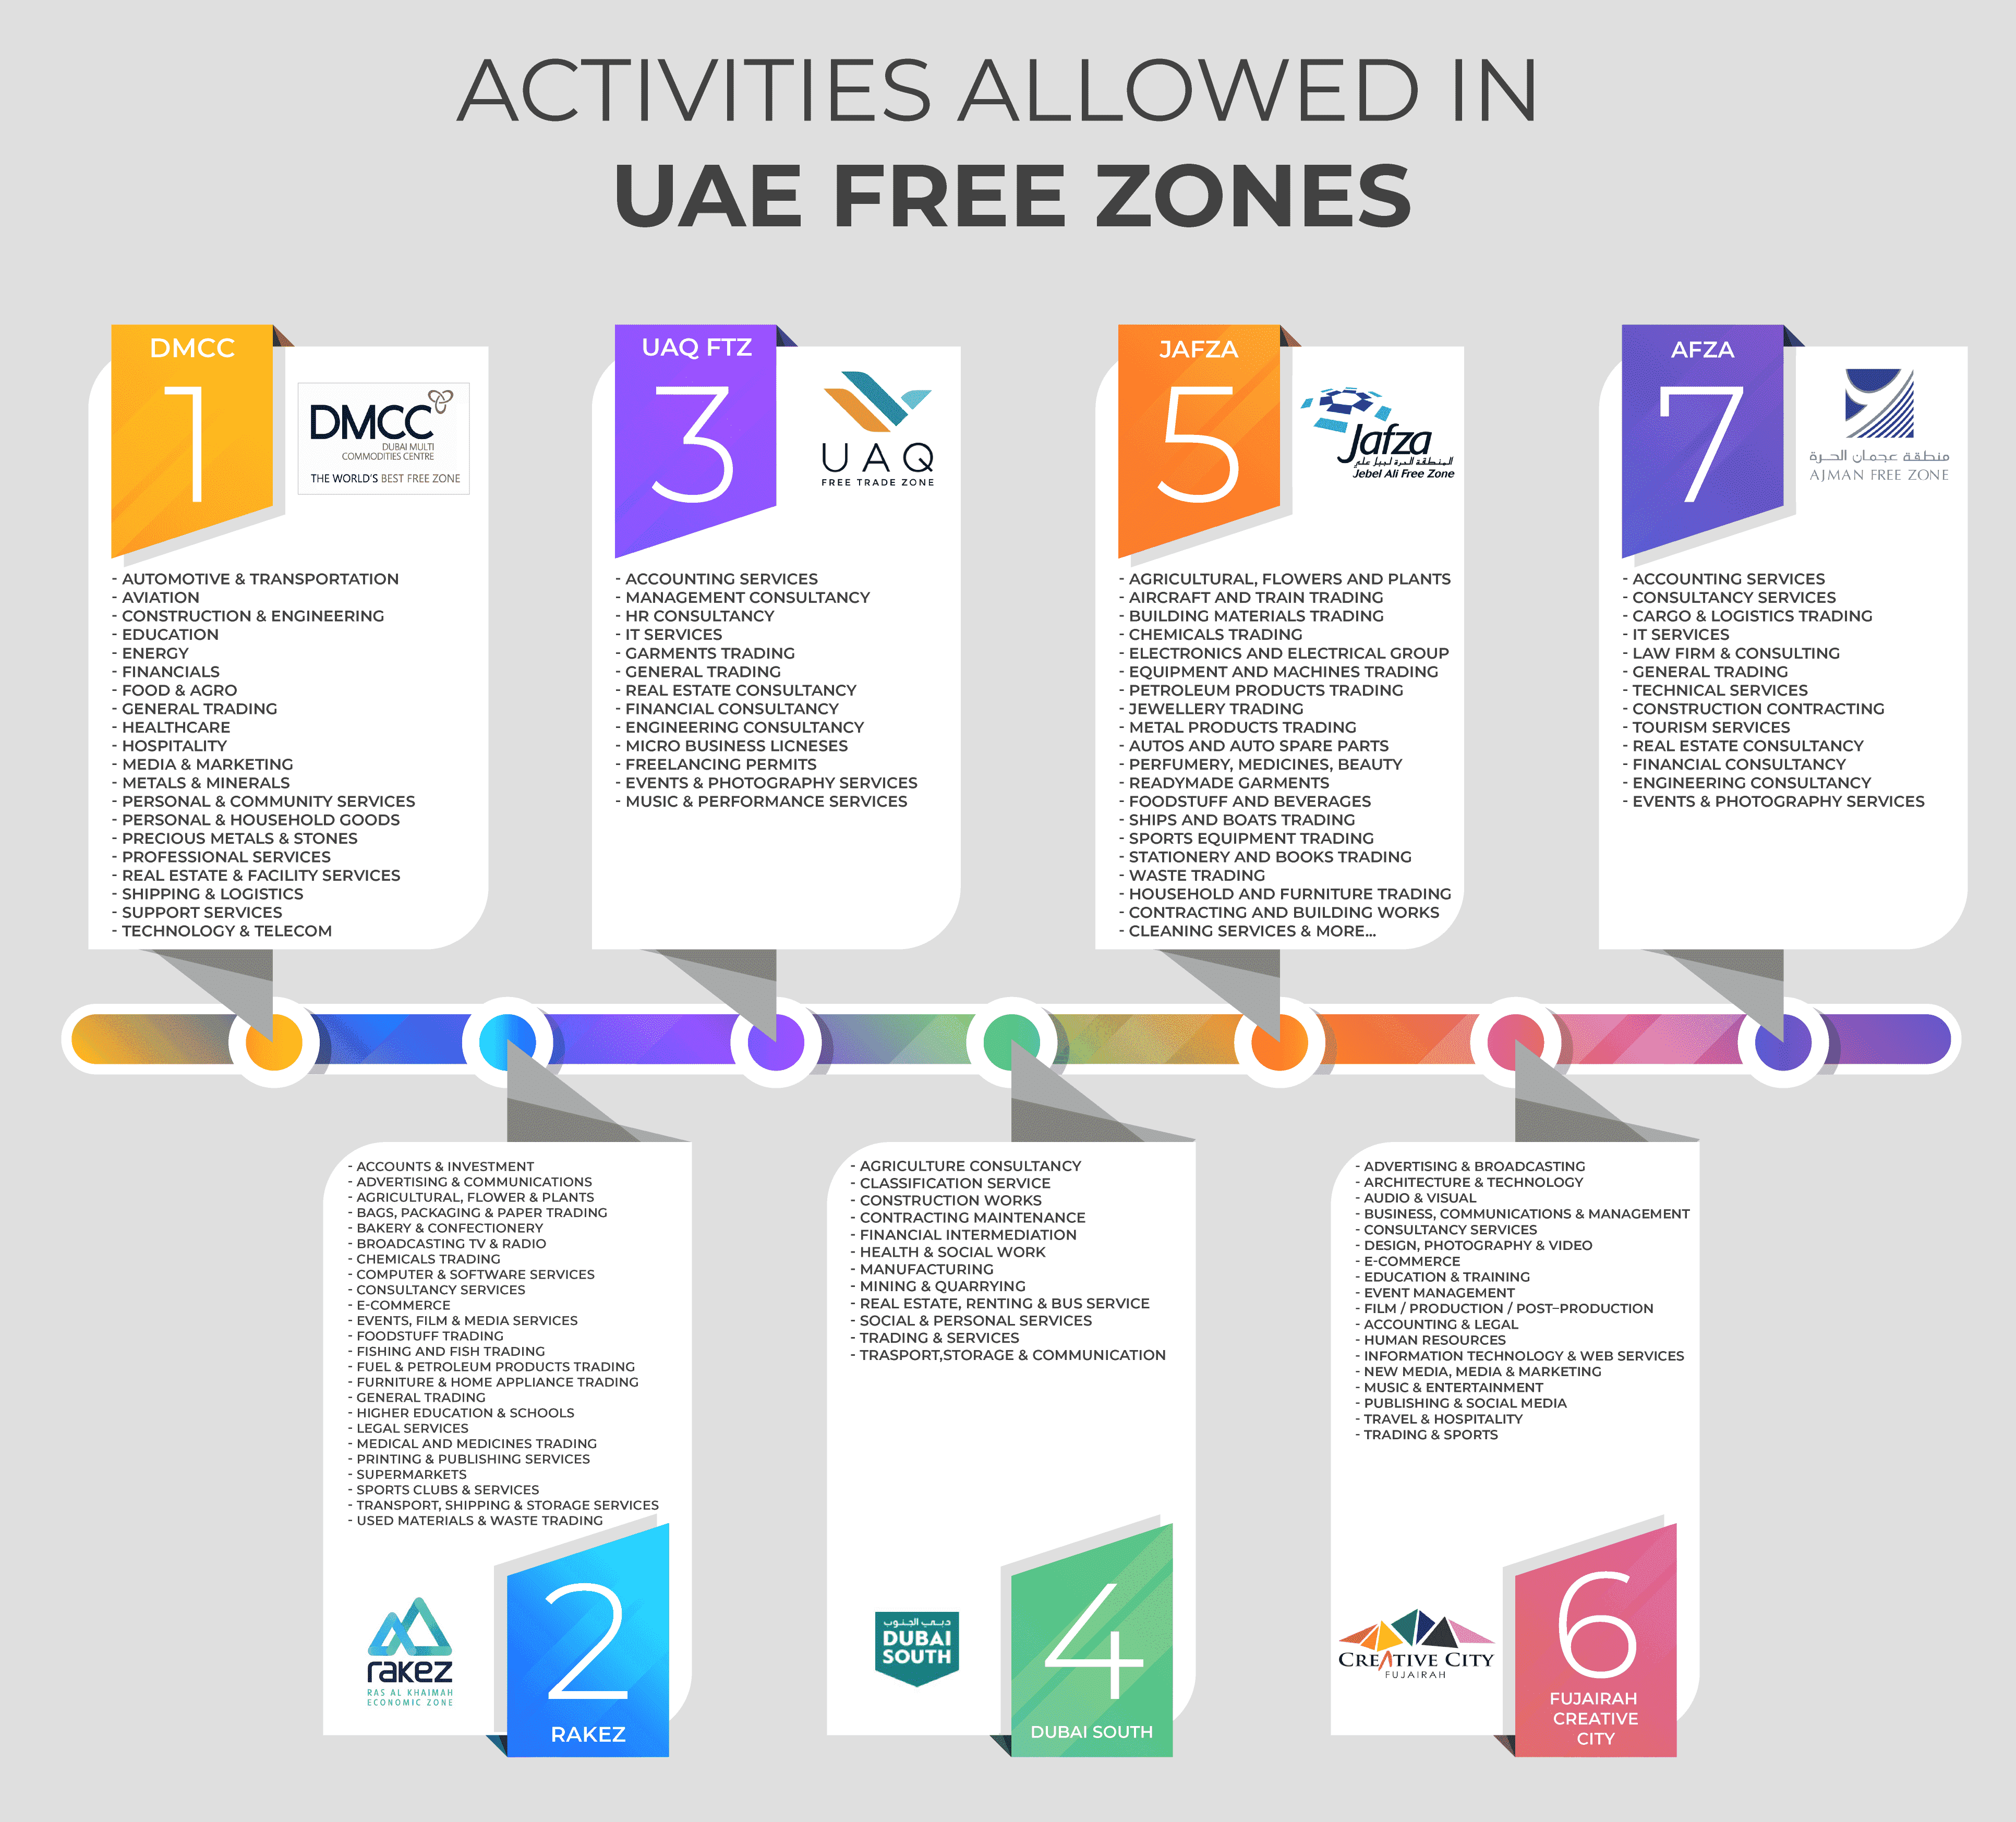 Activities allowed in UAE free zones